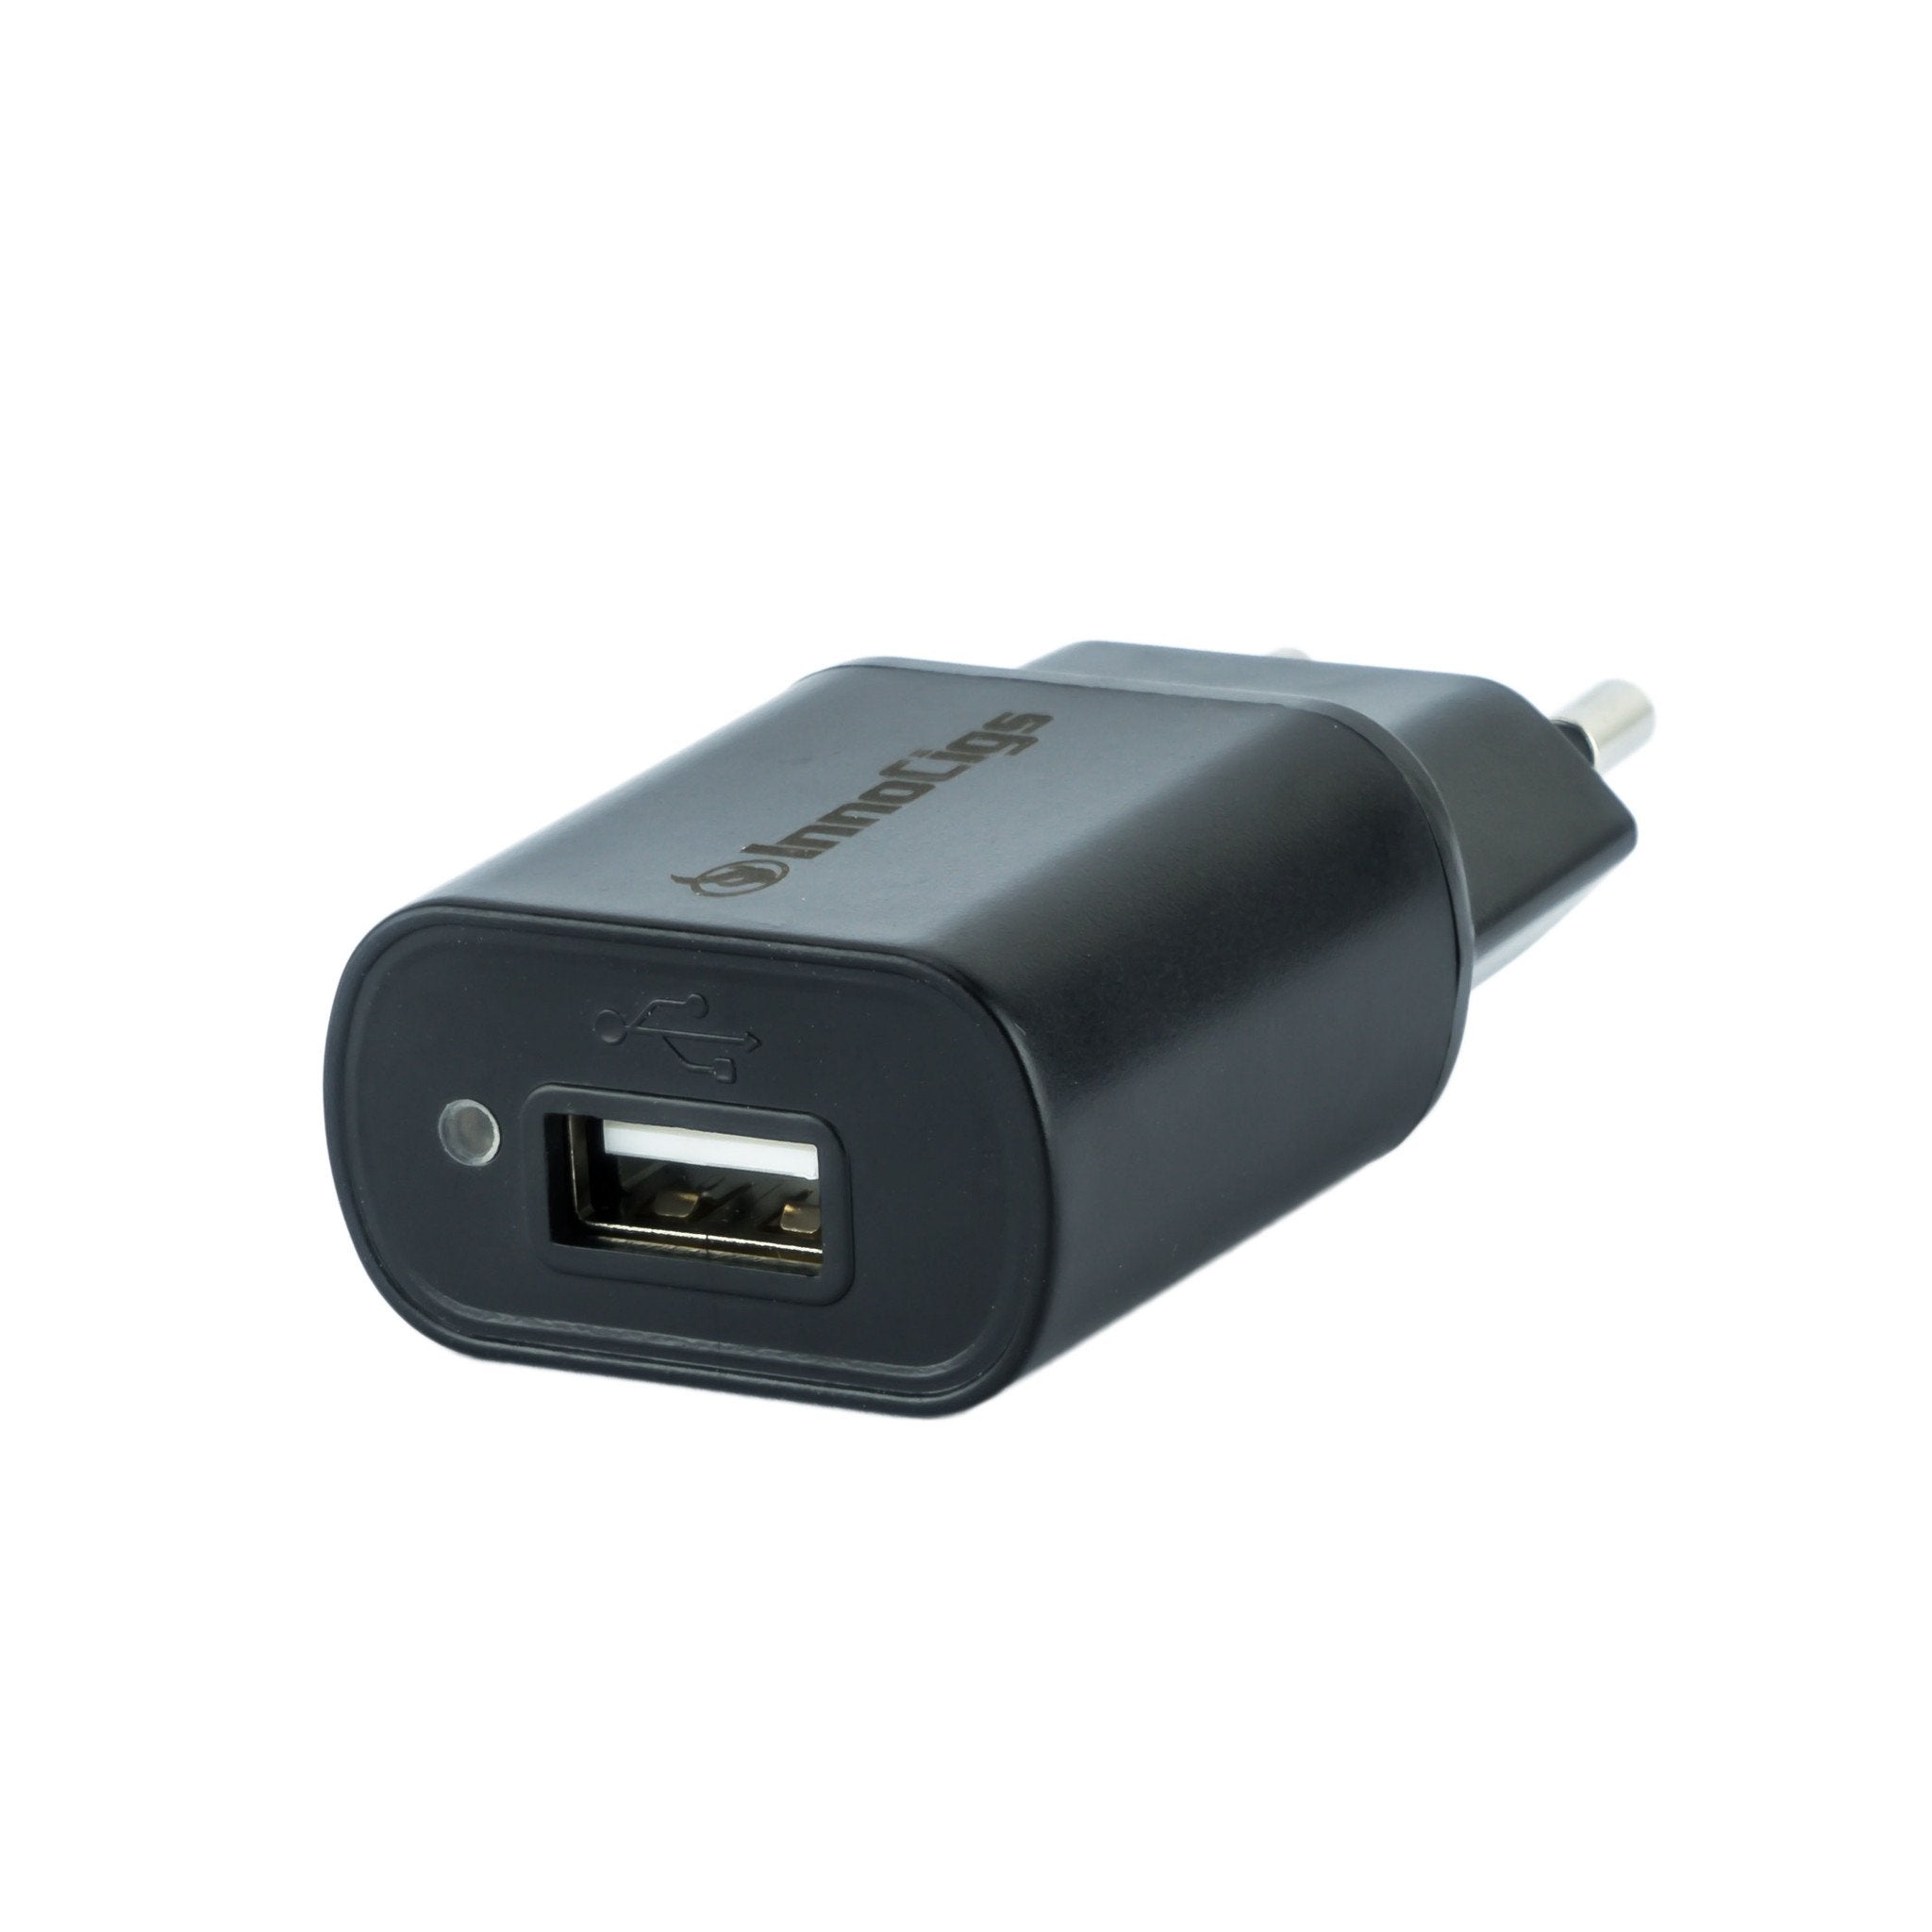 InnoCigs Netzstecker / Steckernetzteil / Netzadapter (USB 500 mA)